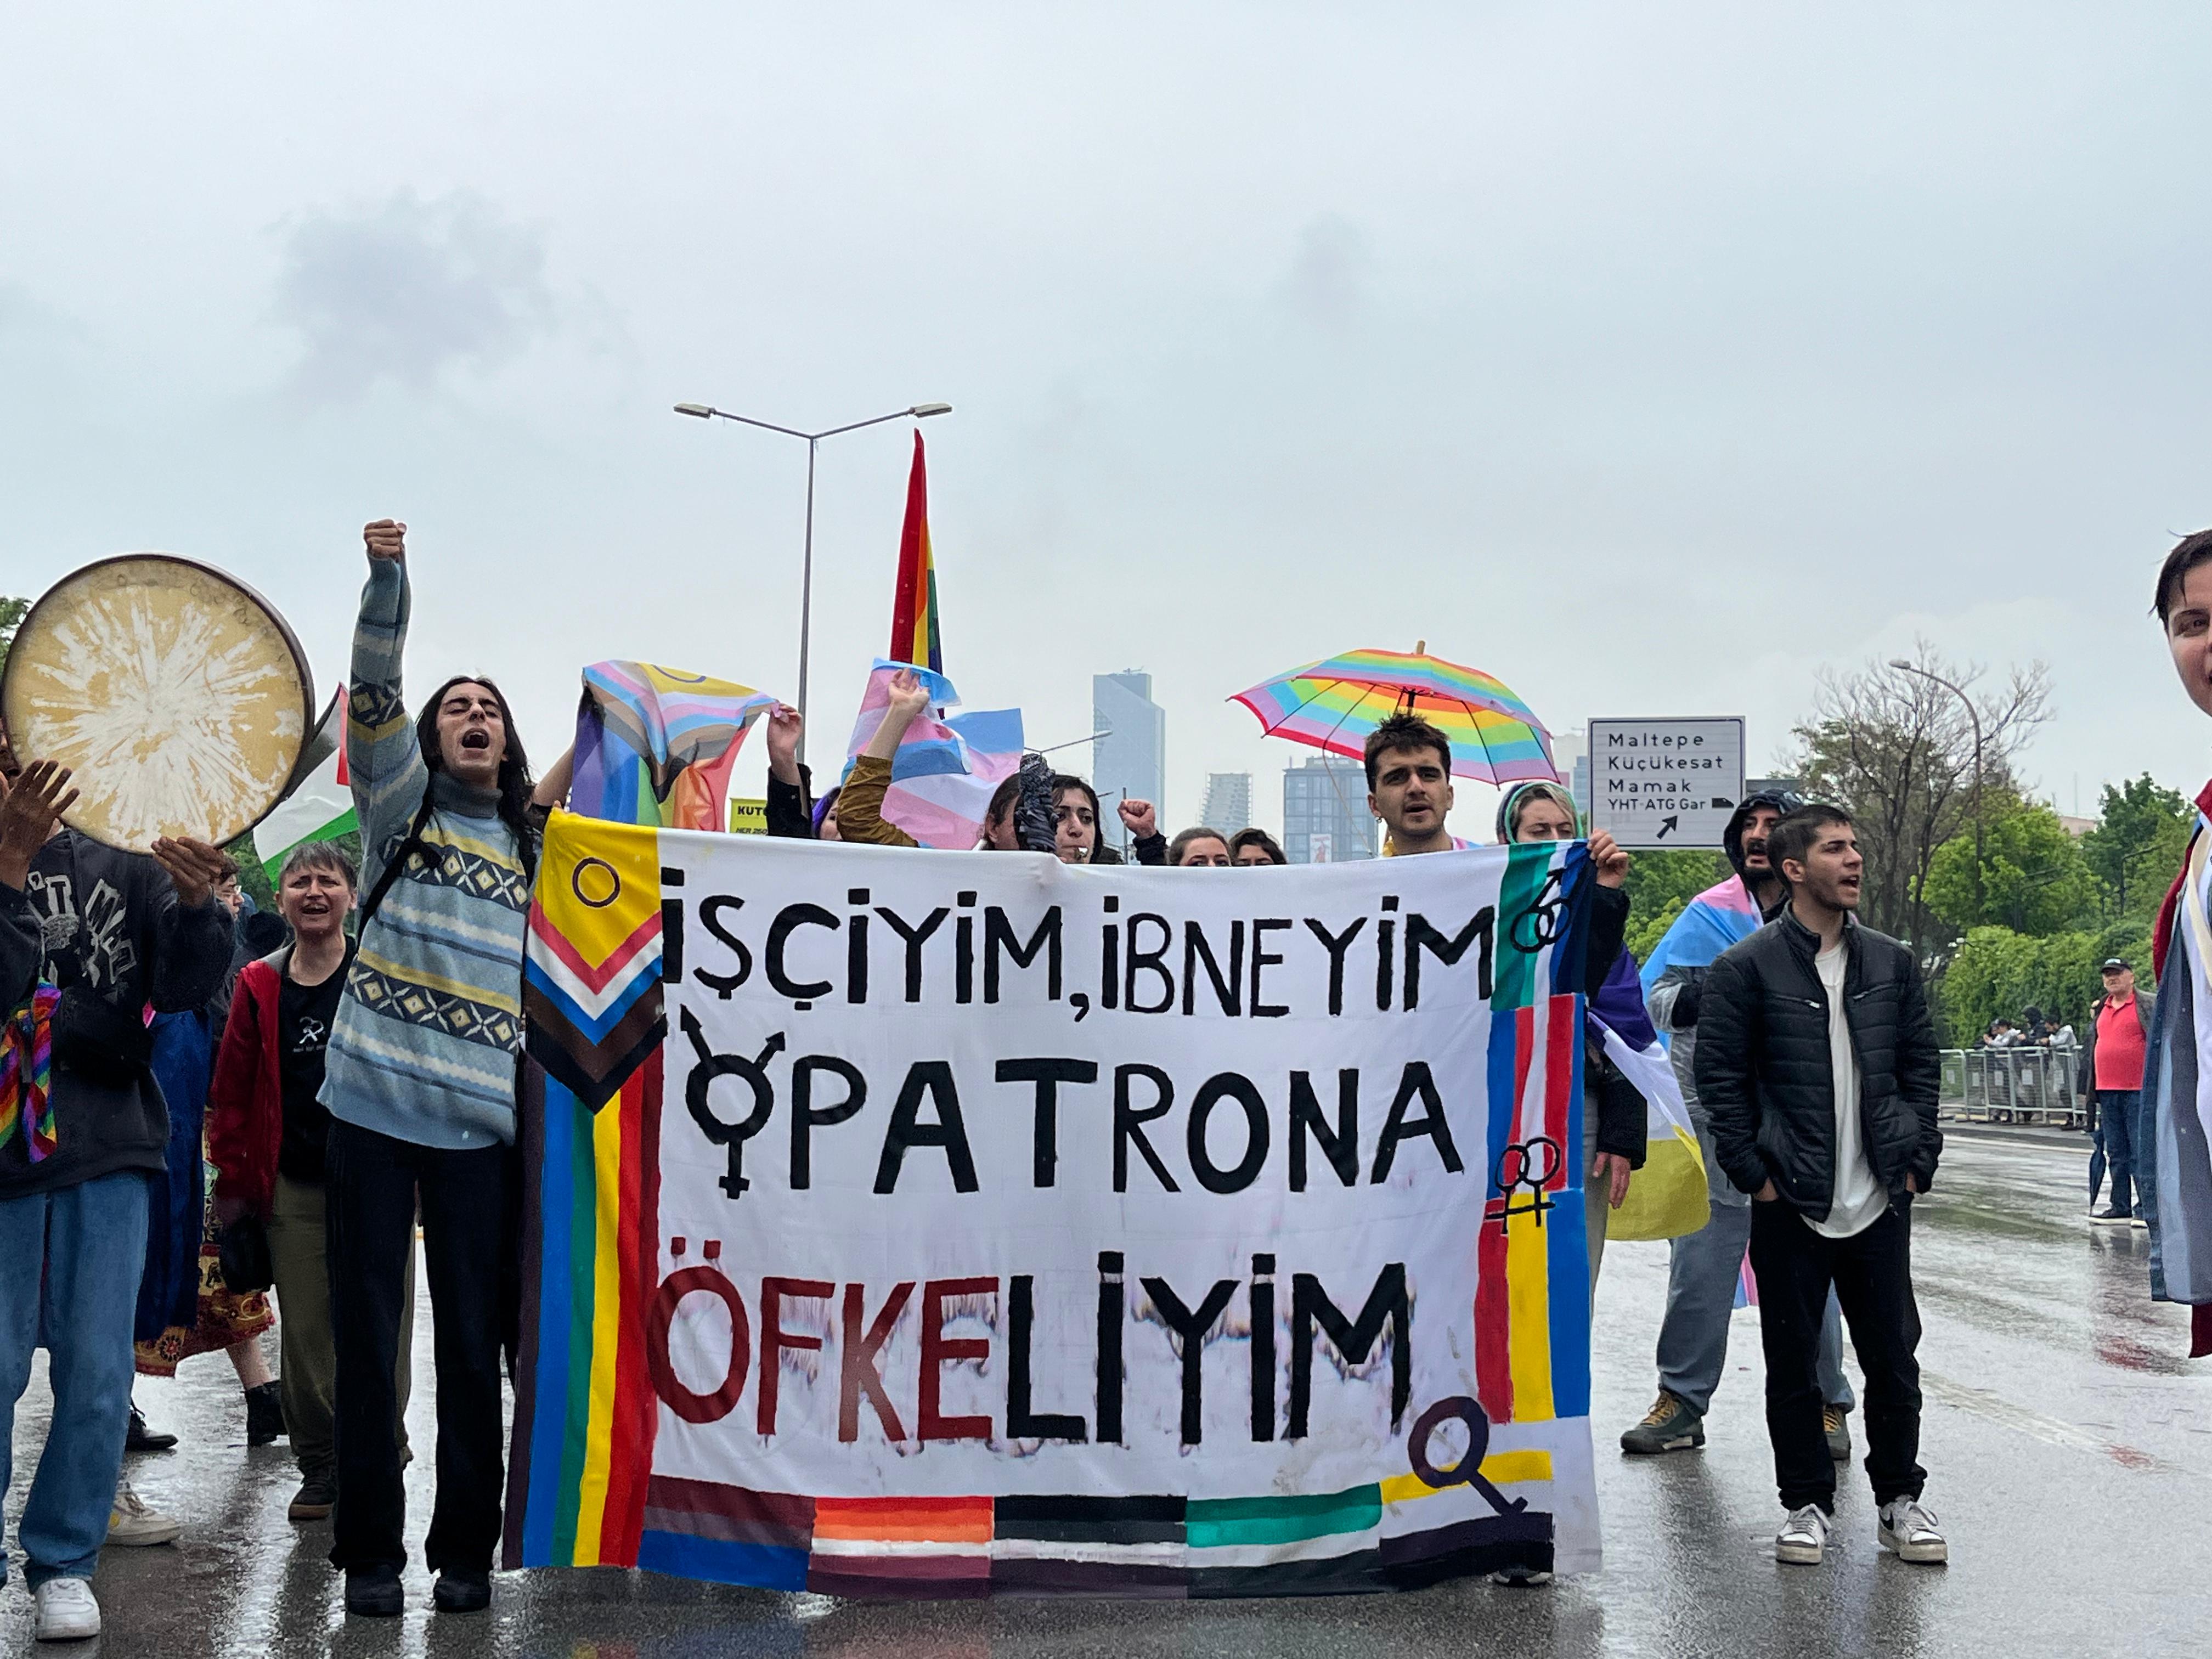 Ankara’da 1 Mayıs: “İşçiyim, İbneyim, Patrona Öfkeliyim” | Kaos GL - LGBTİ+ Haber Portalı Haber